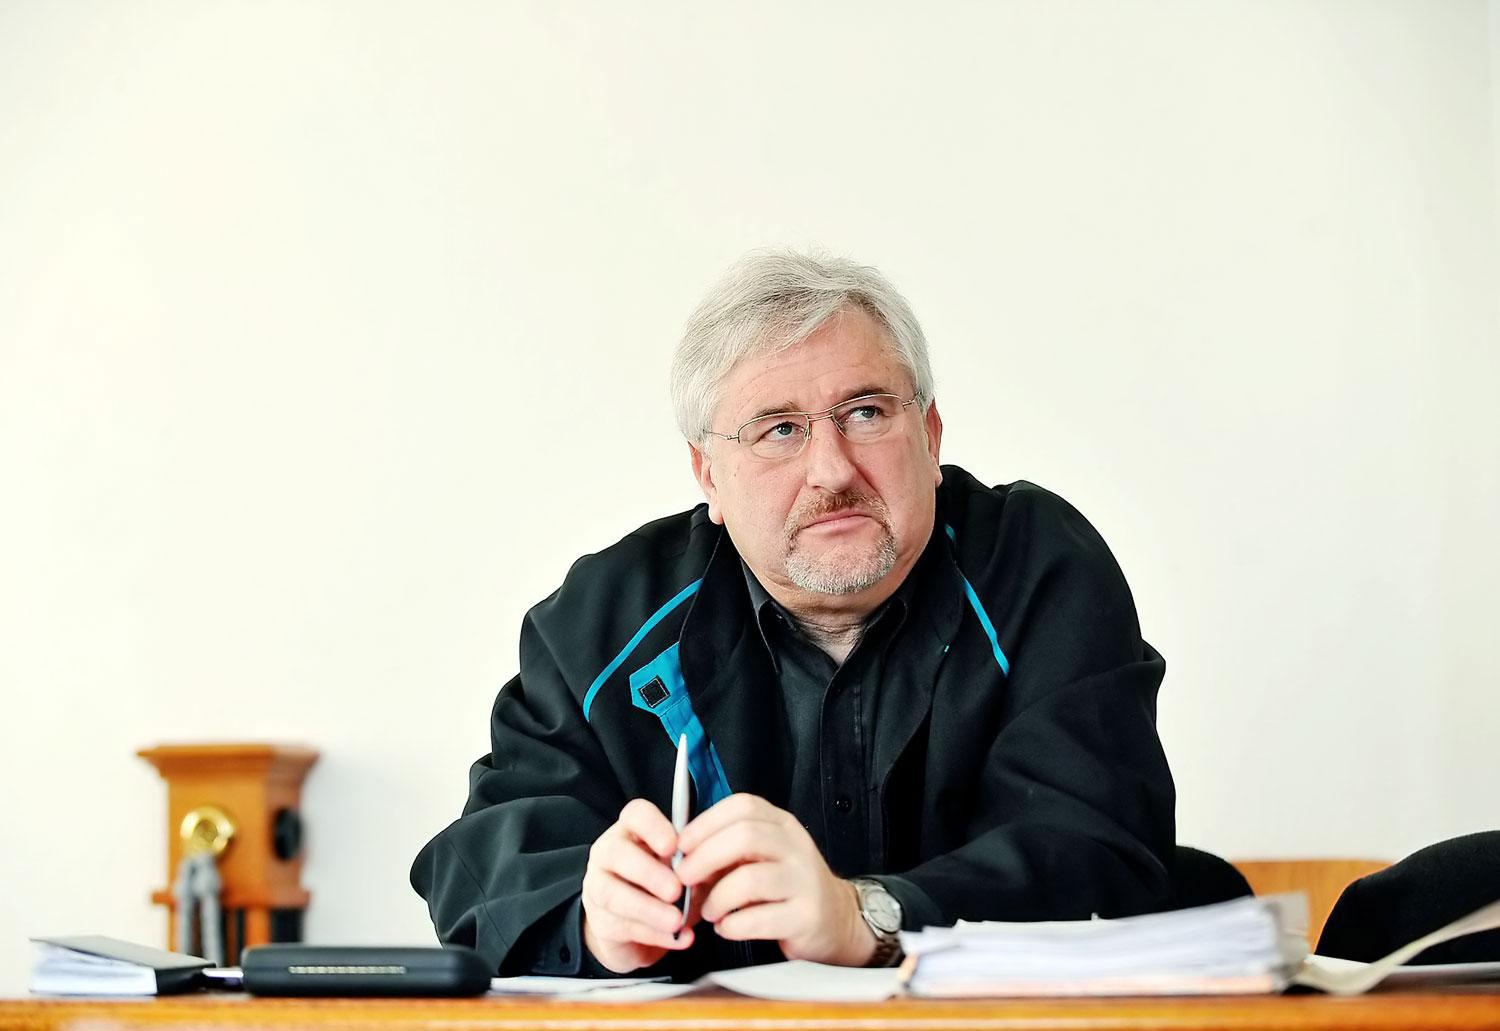 Magyar György ügyvéd szerint lehet még fogást keresni a rendőrség határozatán